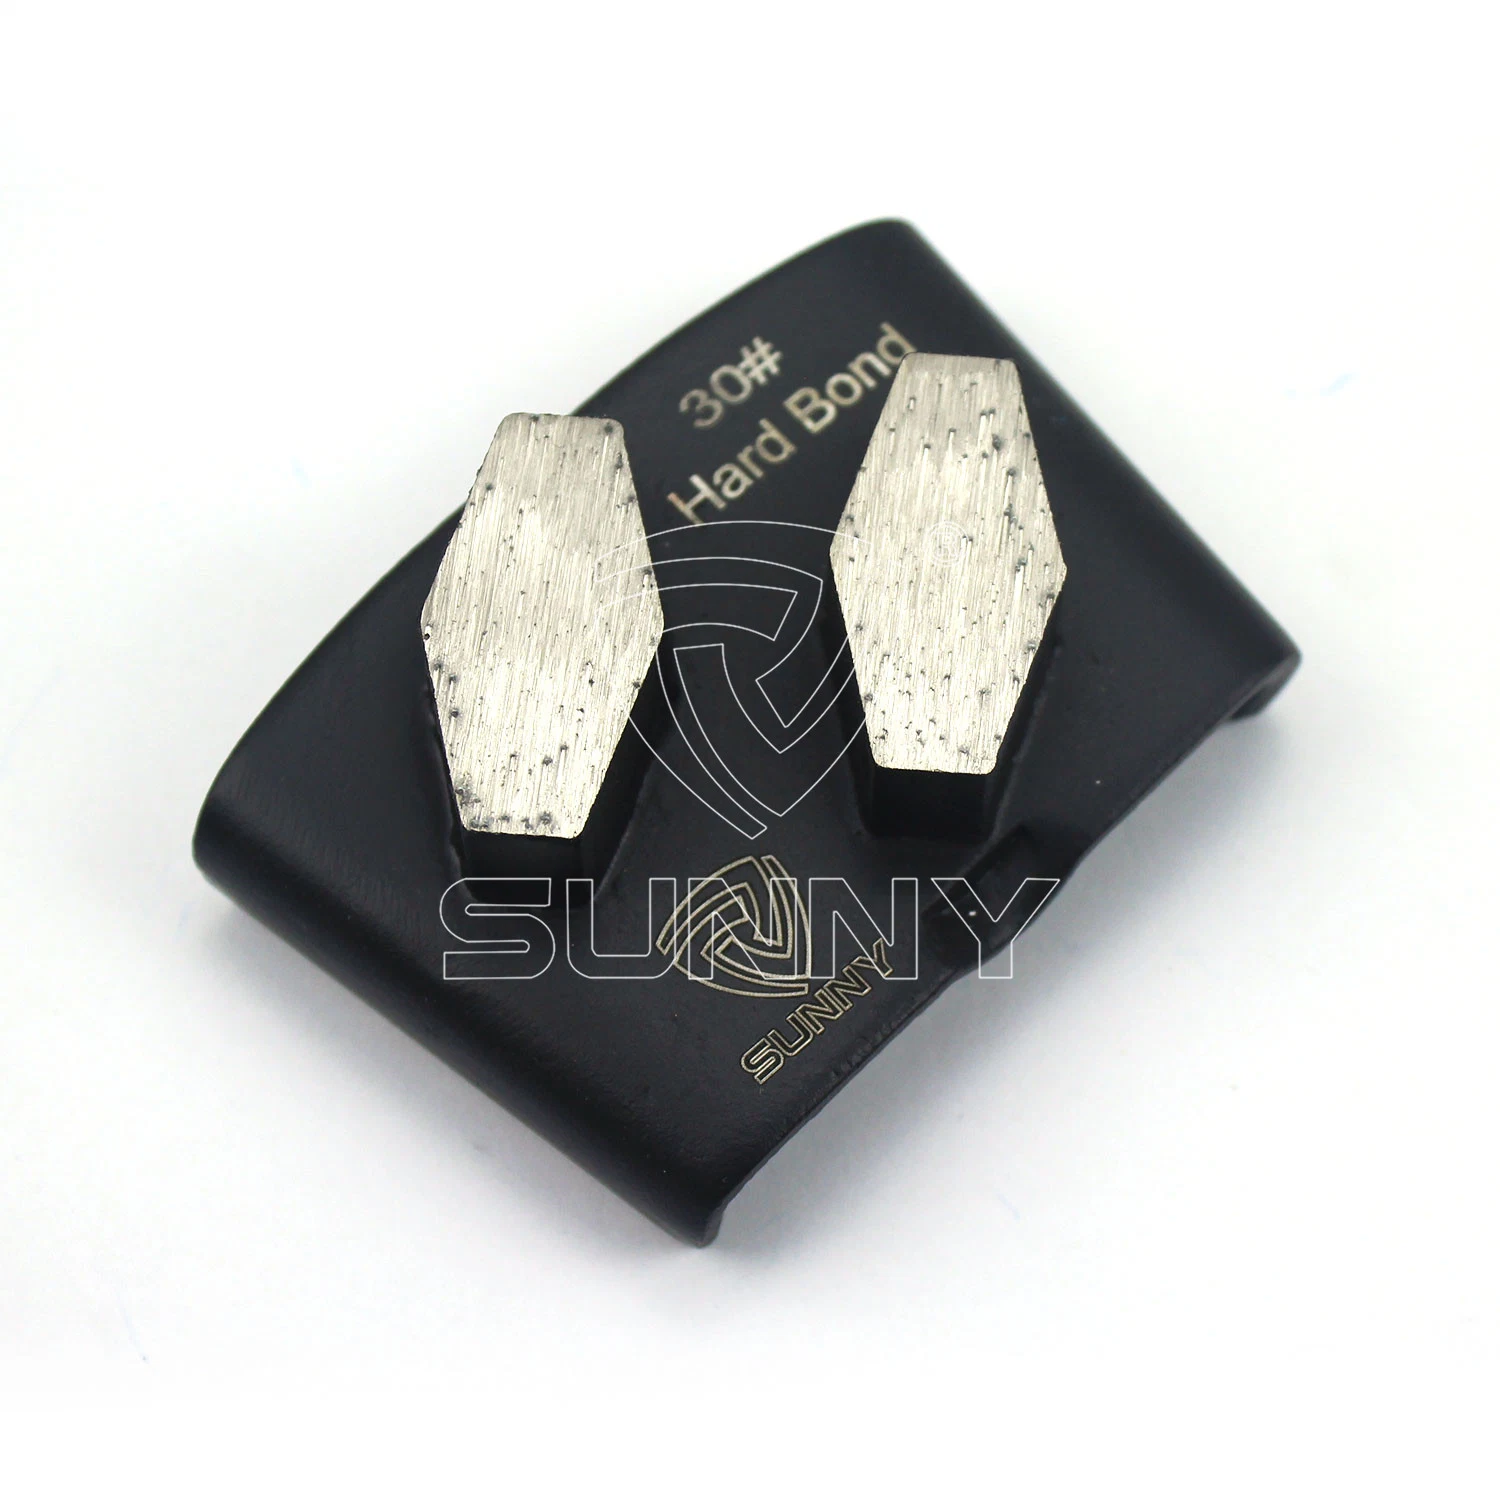 Meules sur béton HTC Diamond Stone pour le meulage du béton